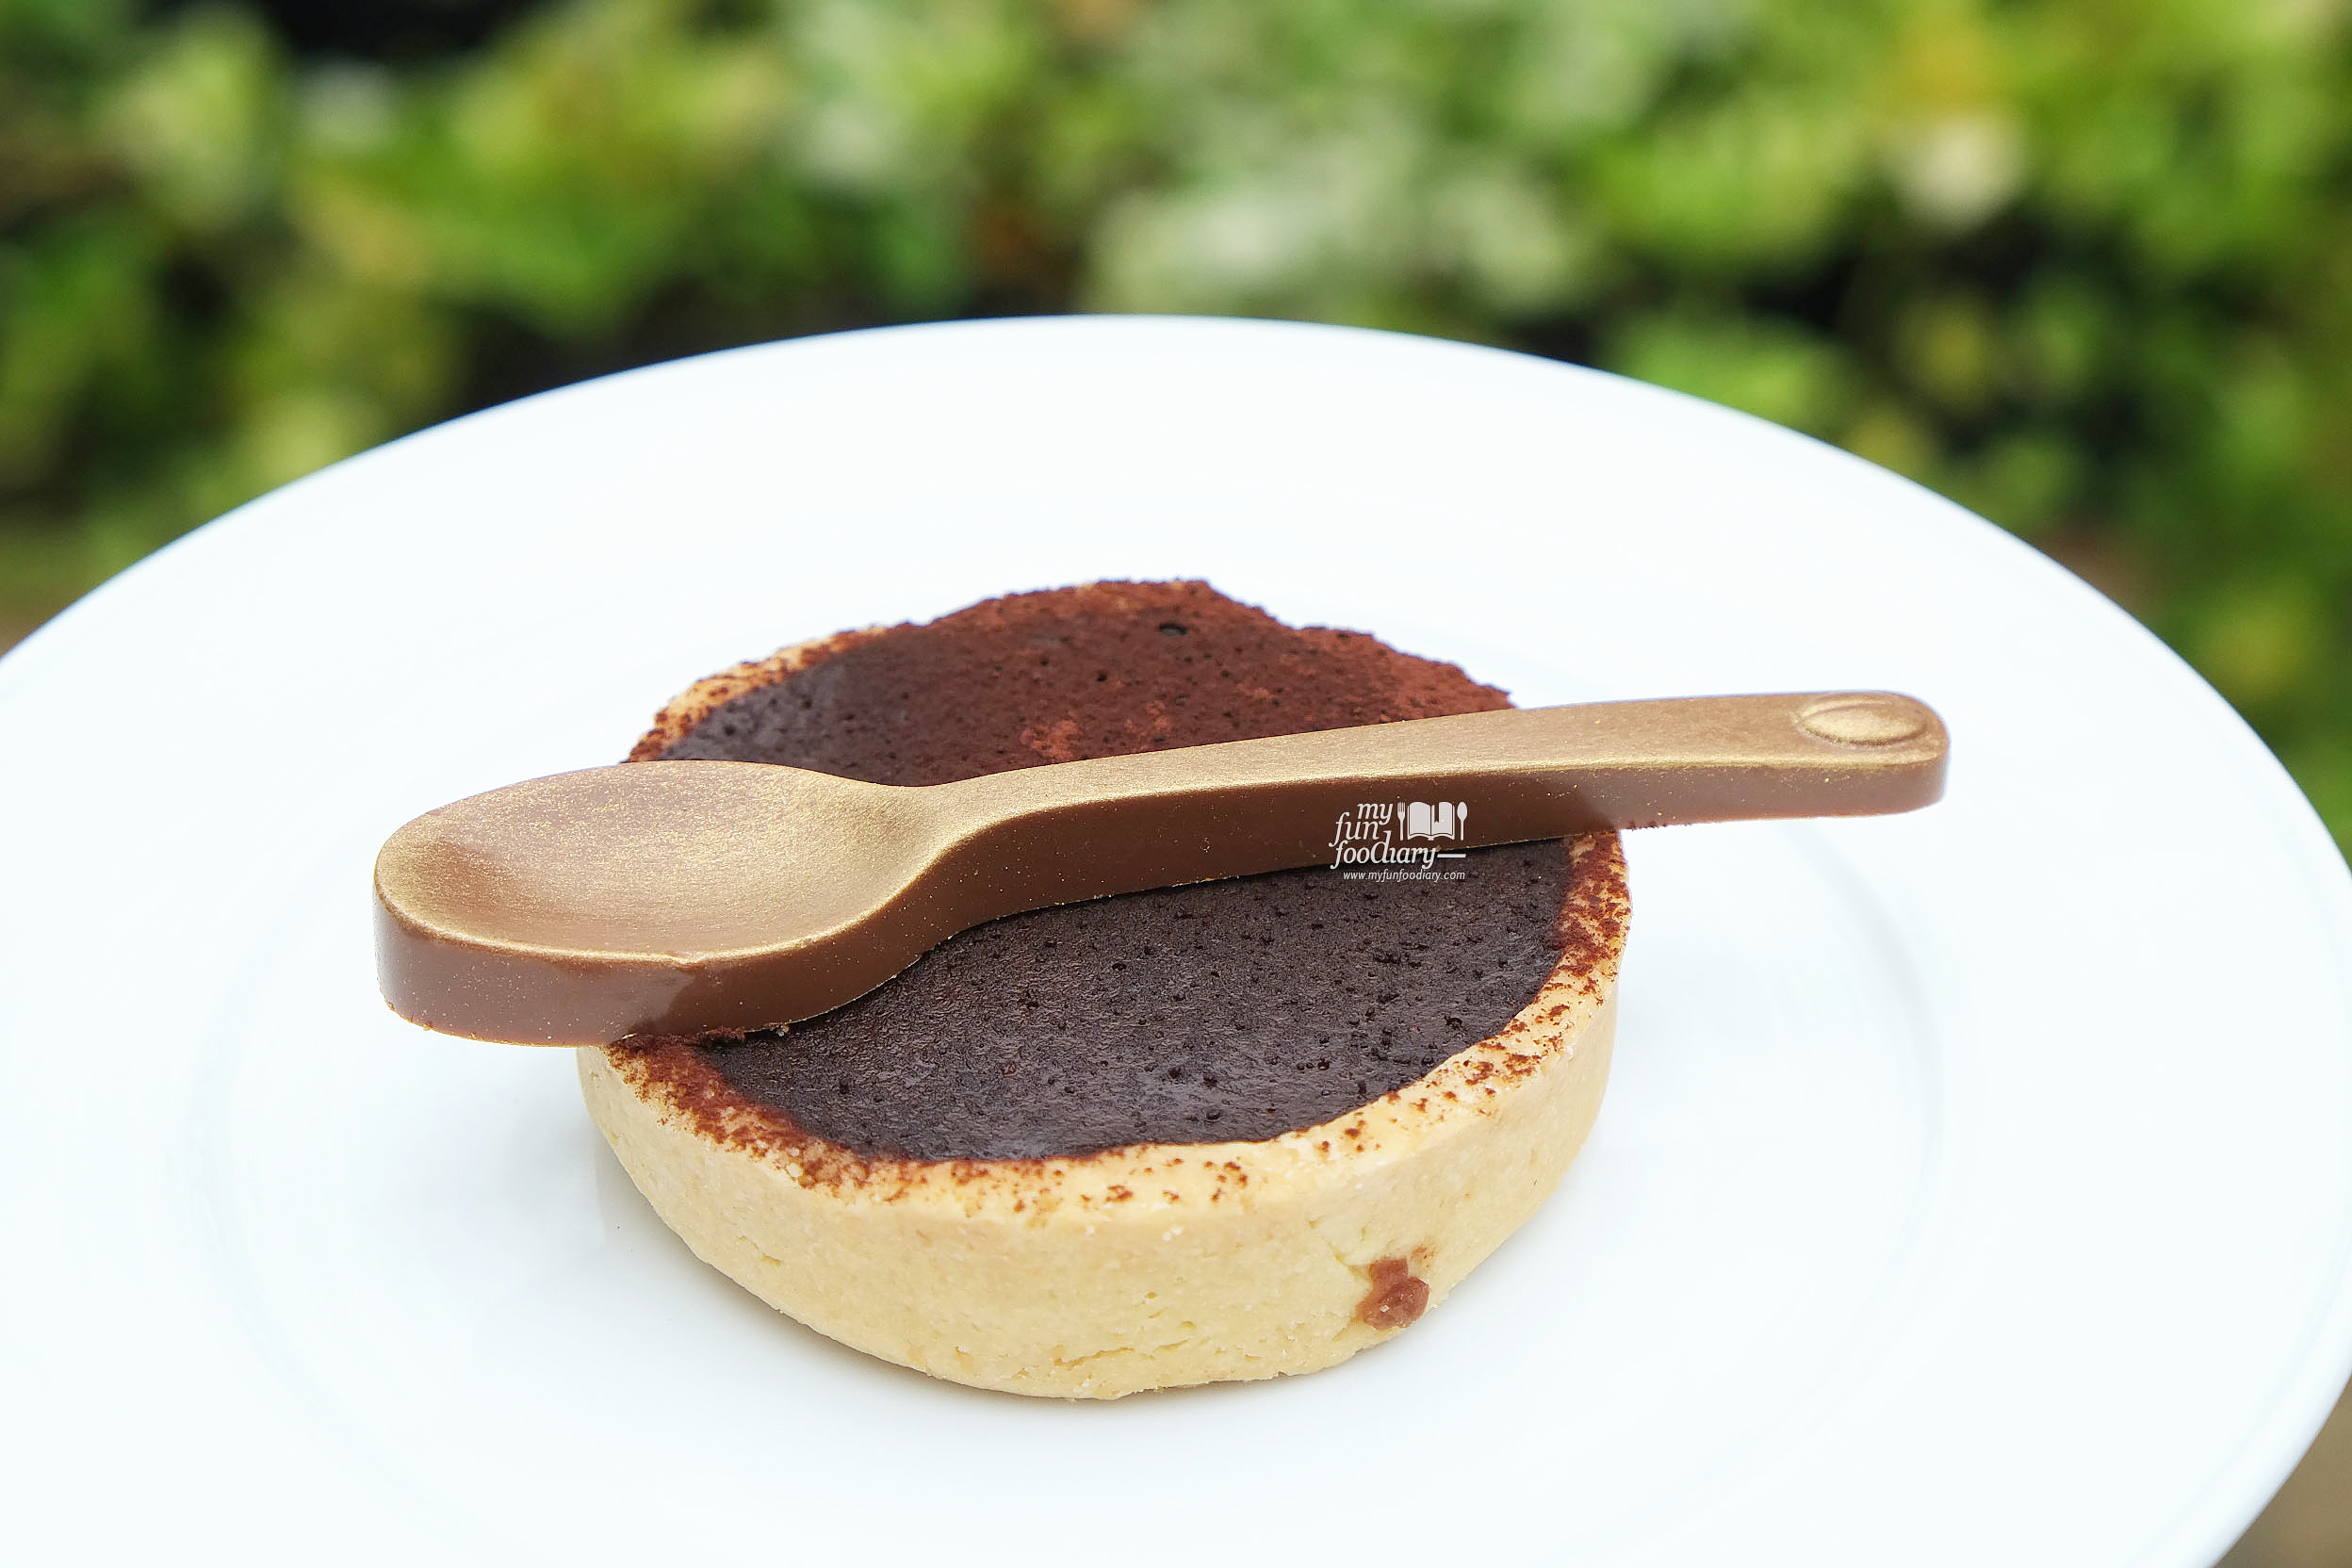 Chocolate Tart made by Kim Pangestu at Hyde Kemang - by Myfunfoodiary